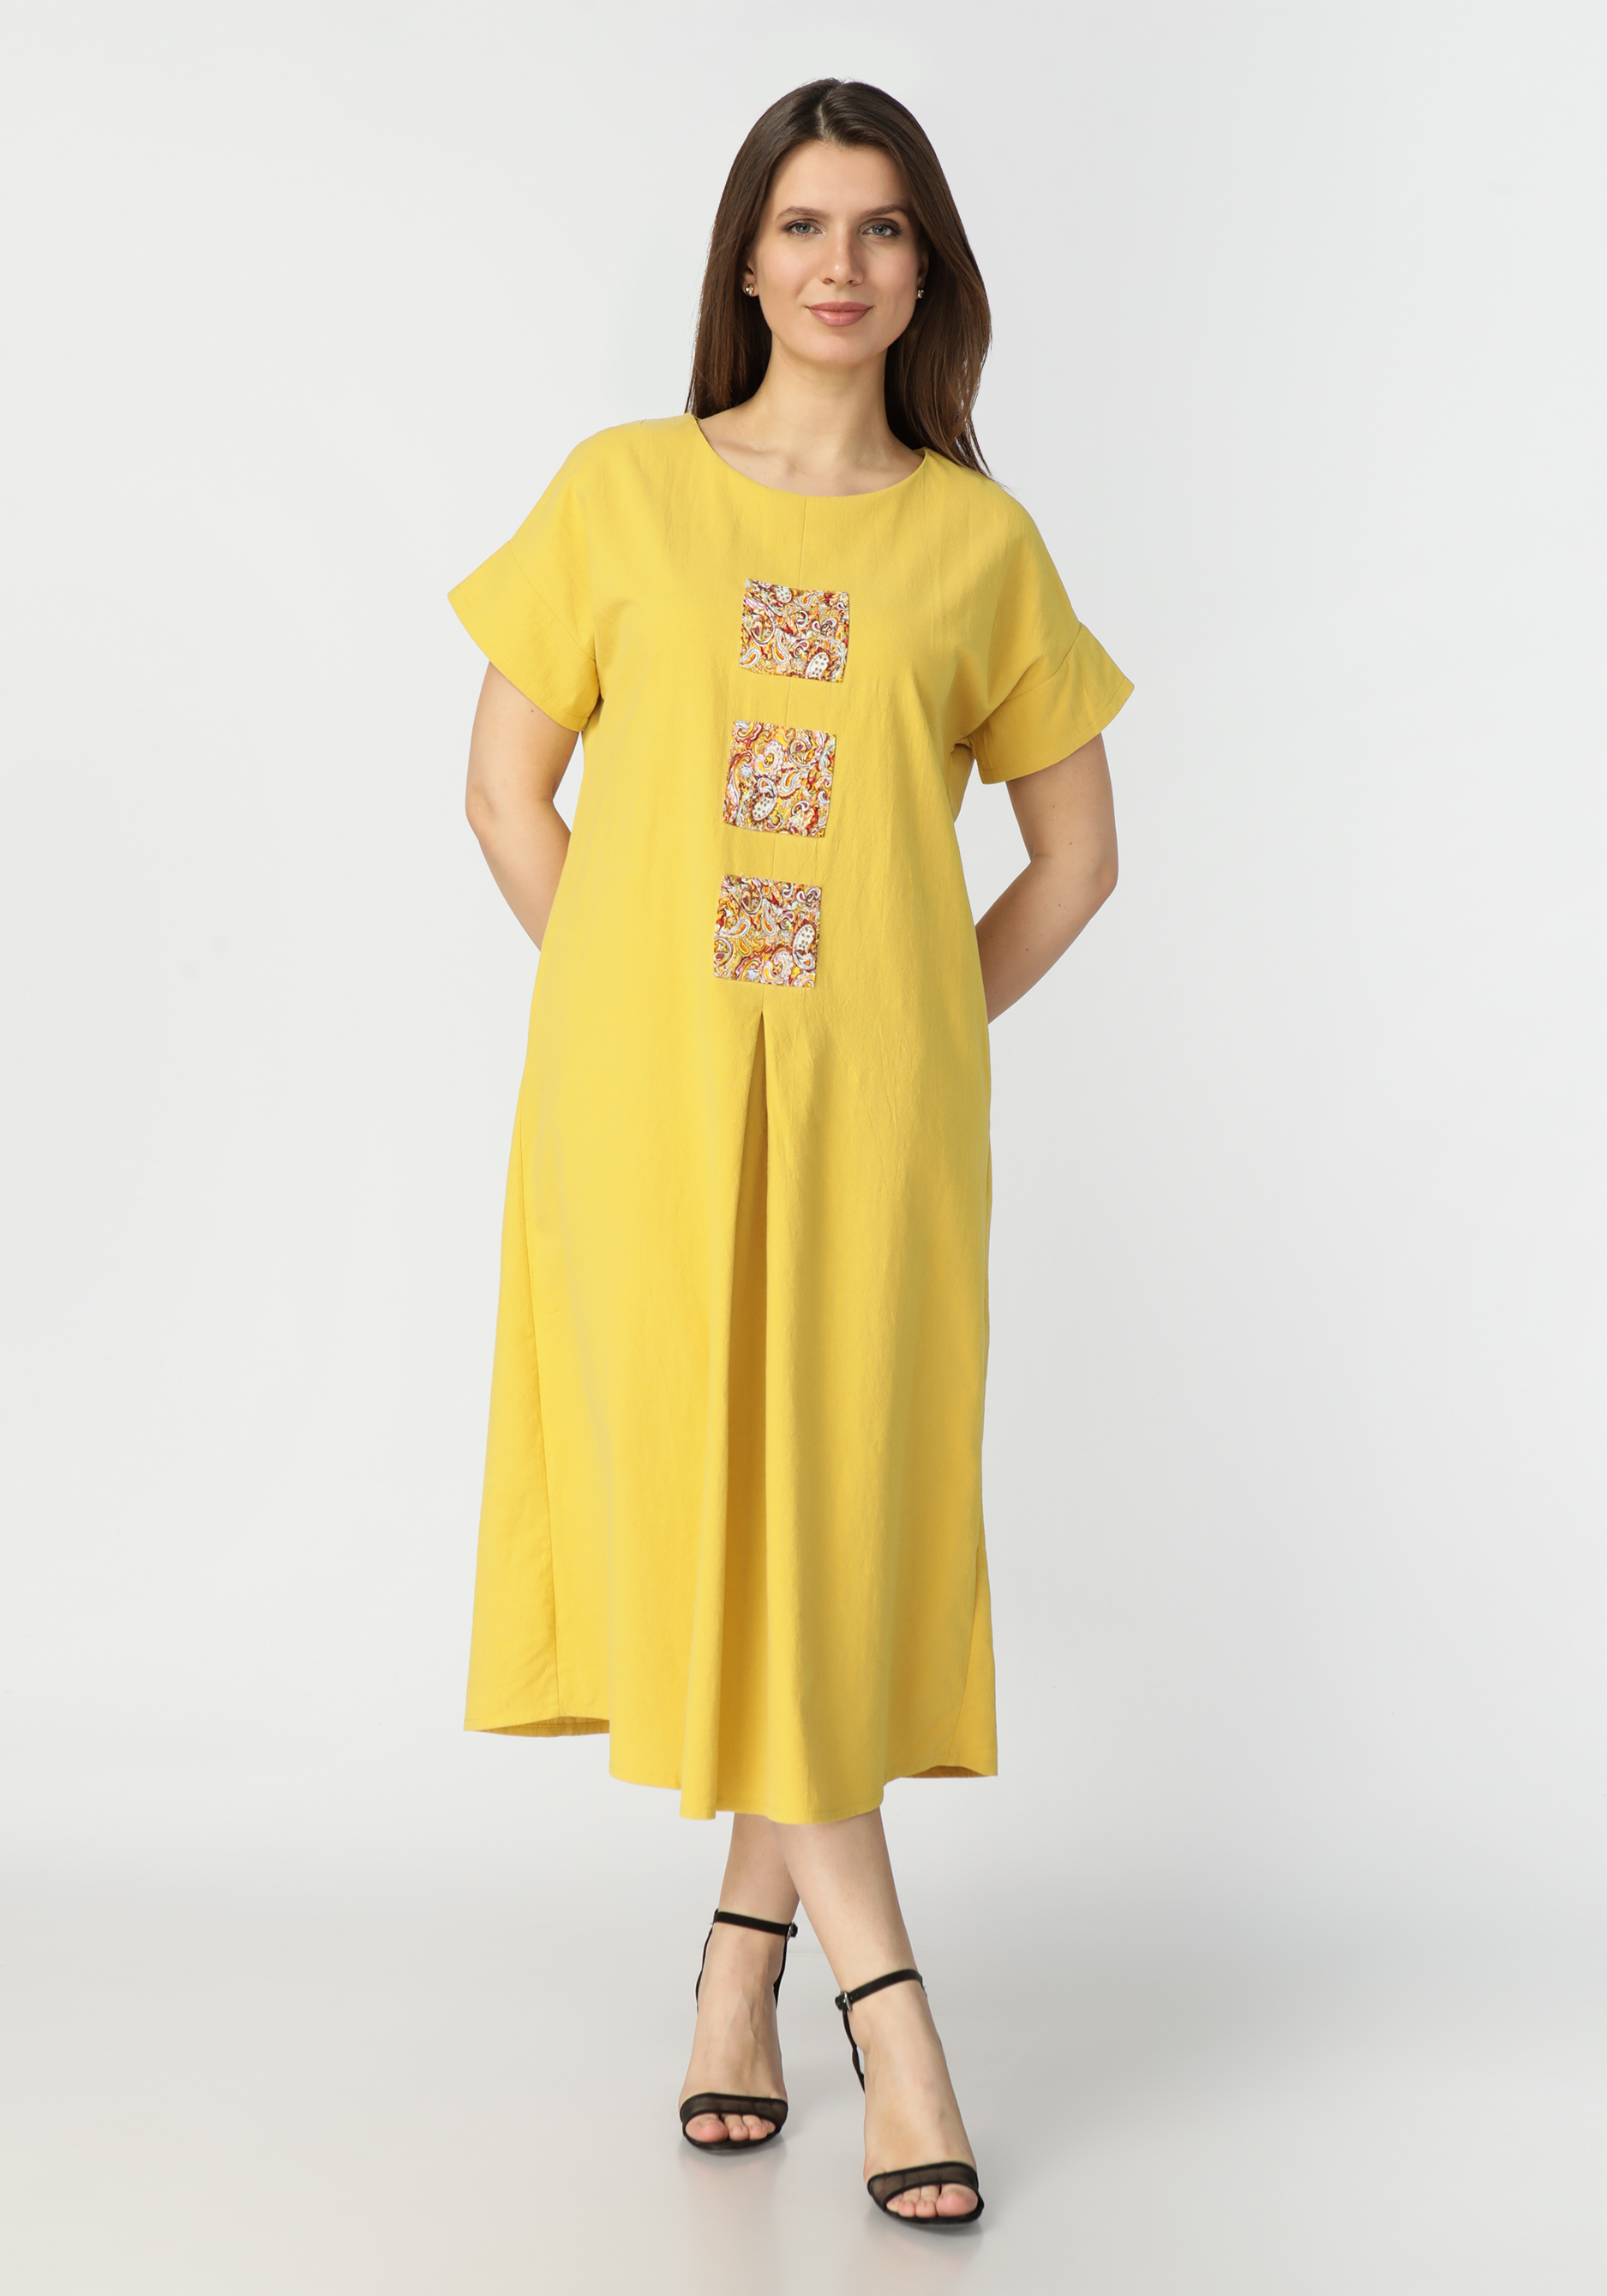 Платье А силуэта с оригинальным декором Frida, цвет желтый, размер 58-60 - фото 1